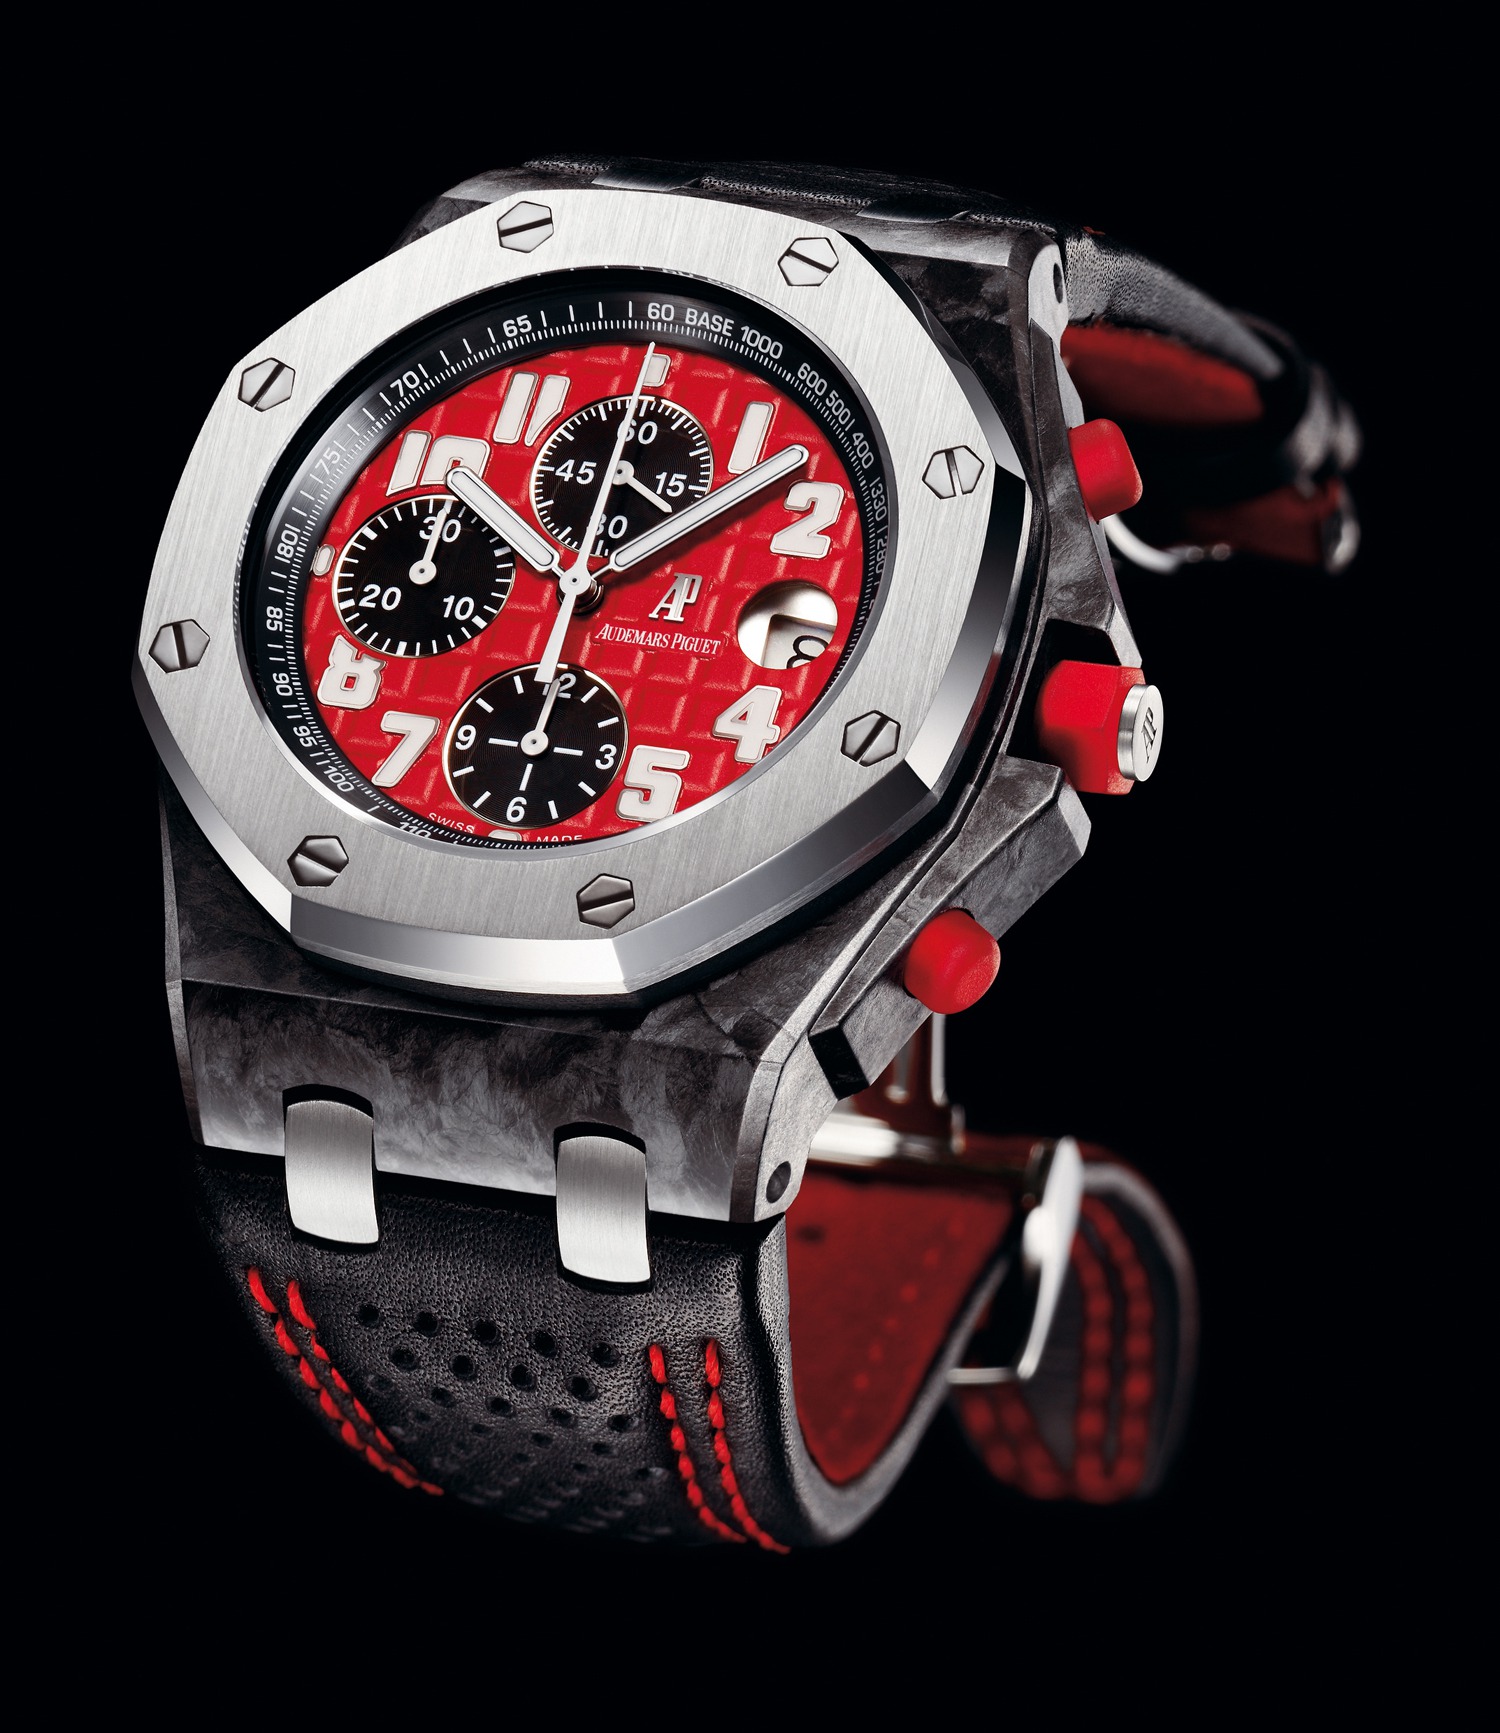 Audemars Piguet Royal Oak Offshore Singapore GP 2008 Forged Carbon watch REF: 26190FS.OO.D003CU.01